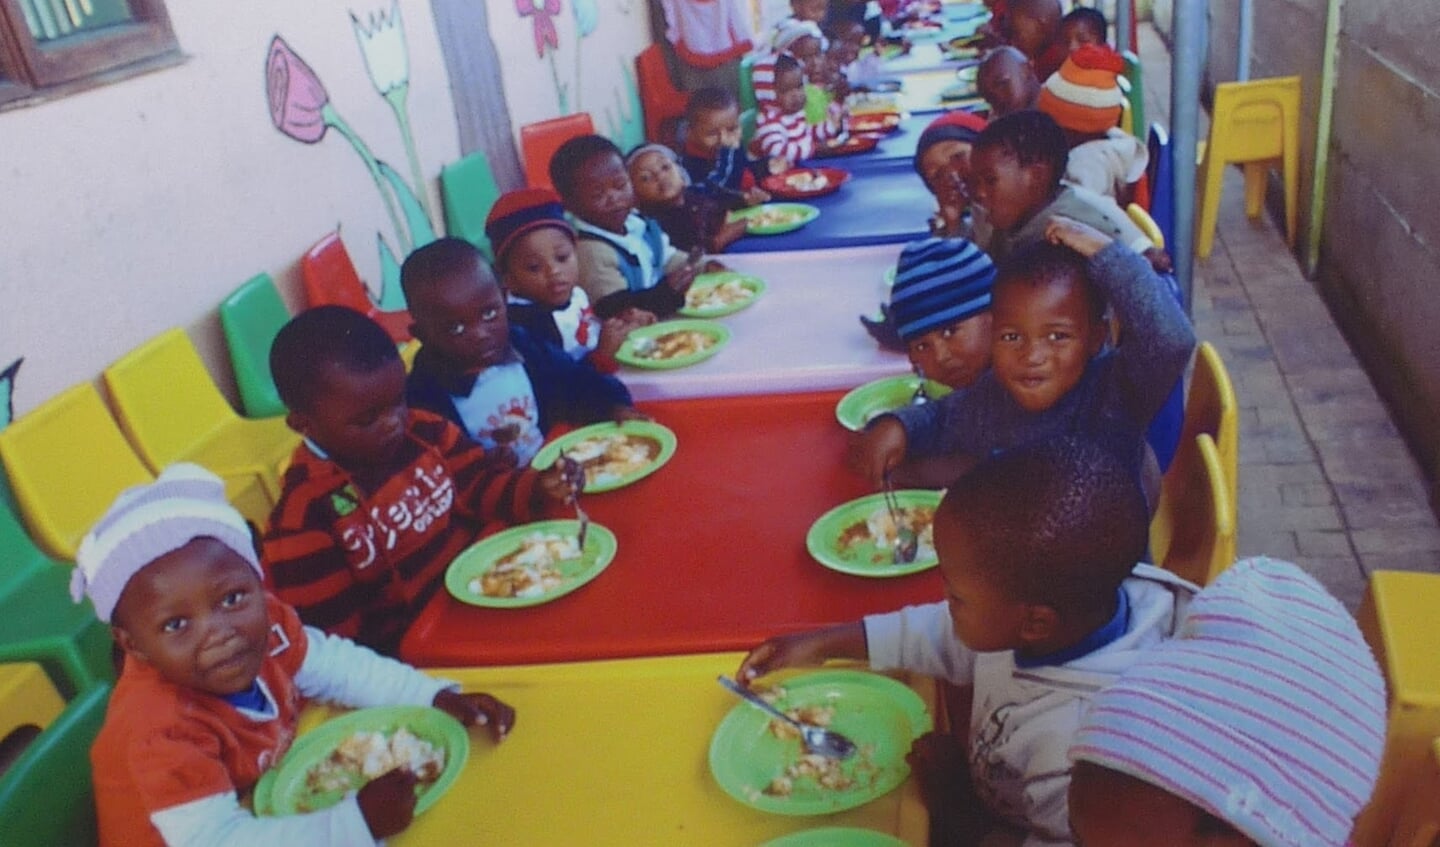 Stichting Ikamva Labantu (betekenis: 'toekomst van onze natie') zorgt dat jonge kinderen een maaltijd en scholing krijgen.